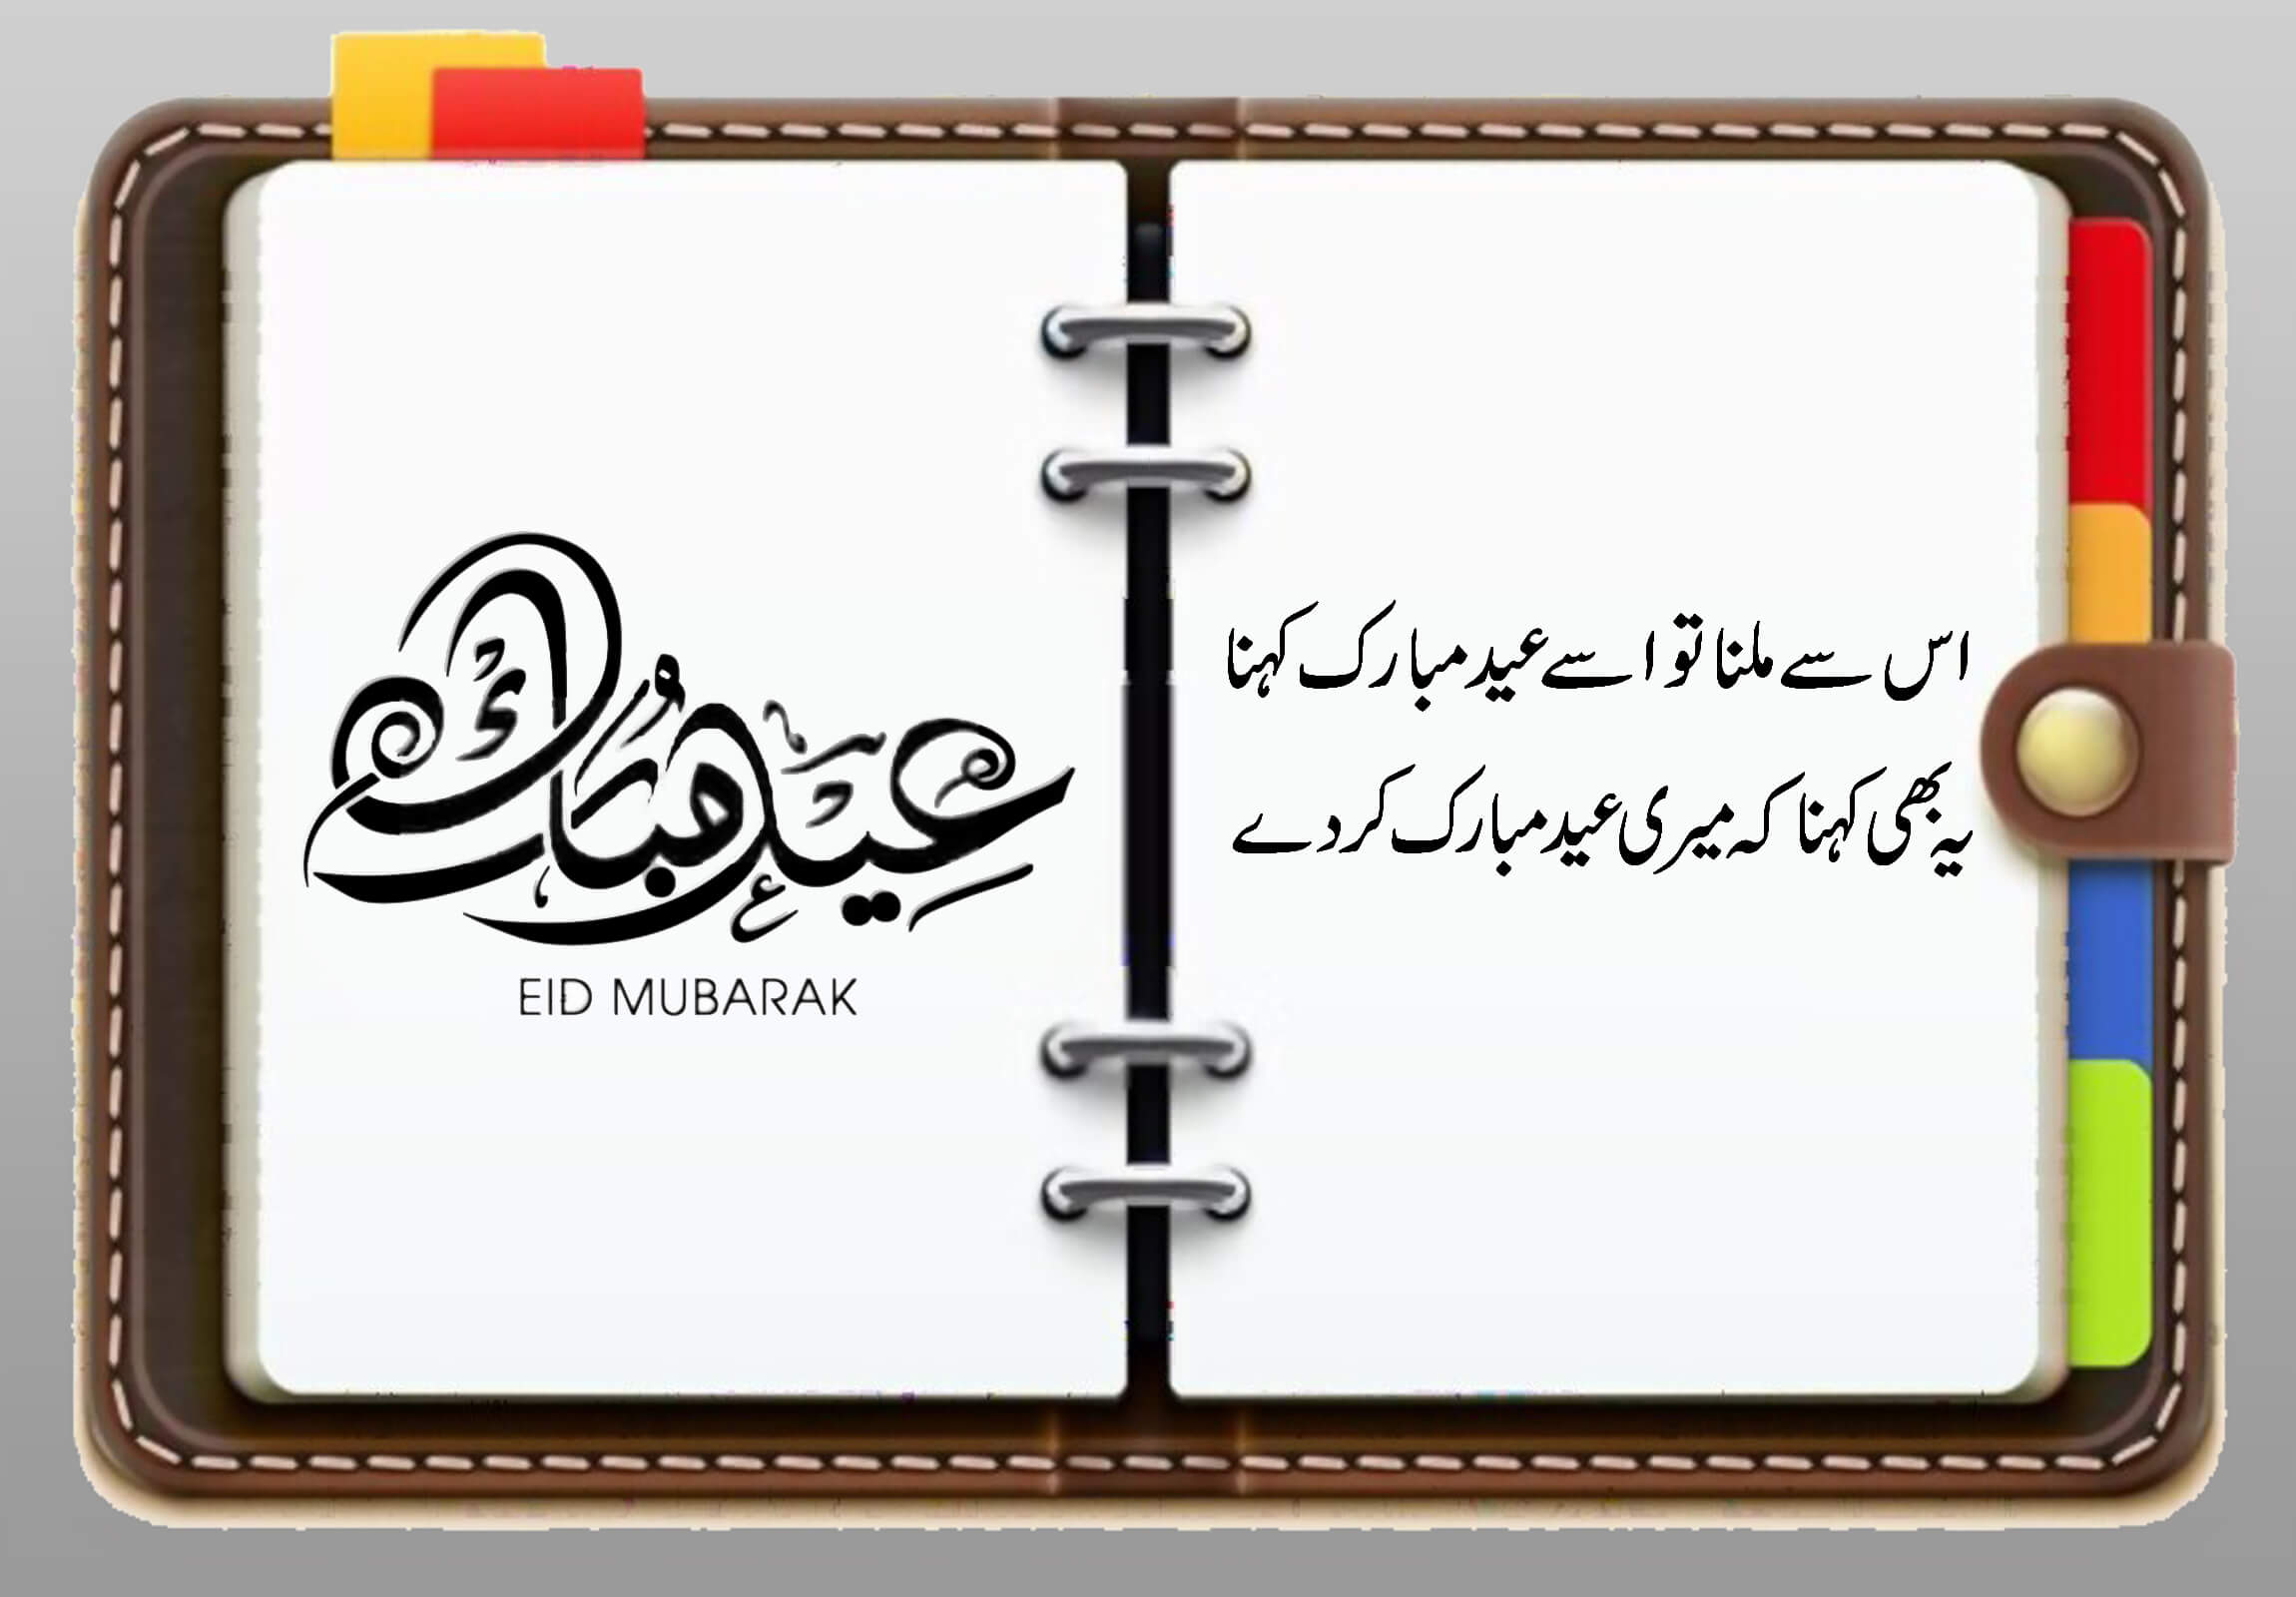 Eid al Adha poetry in urdu on Leather personal organizer image